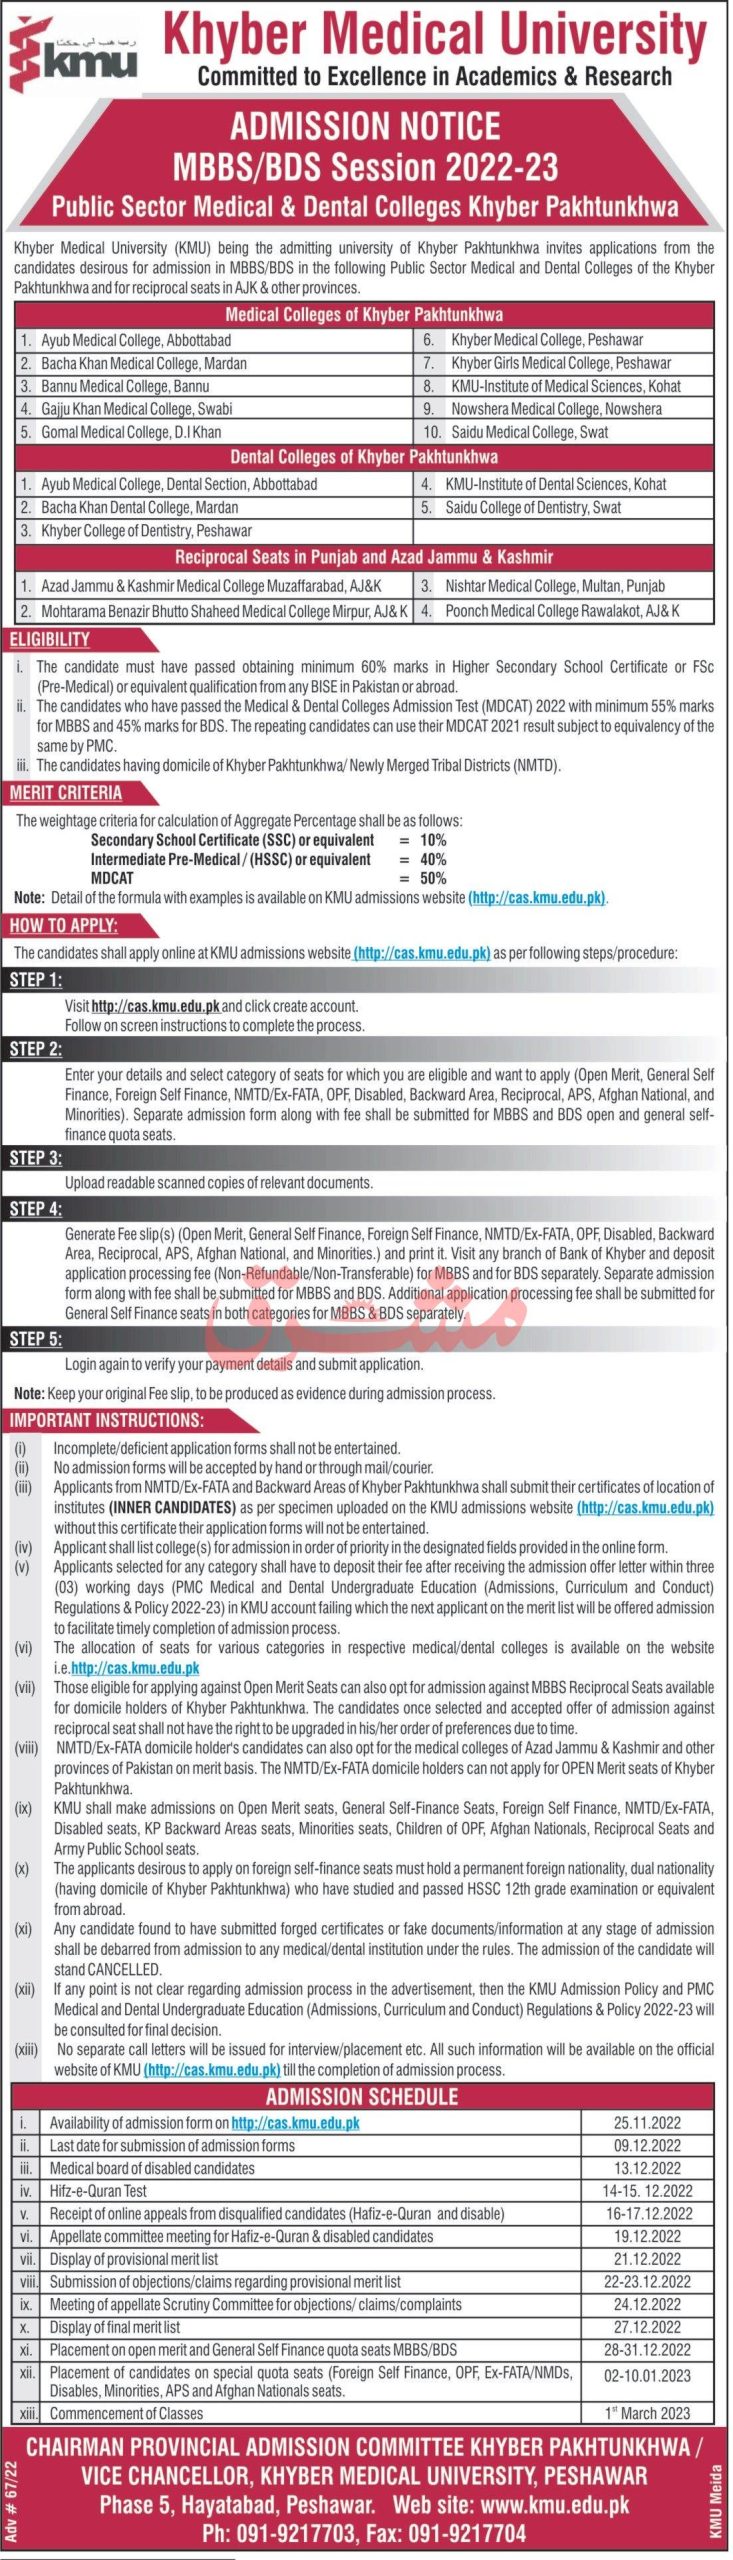 KMU Admission 2023 in Public Sector Medical & Dental Colleges of KPK